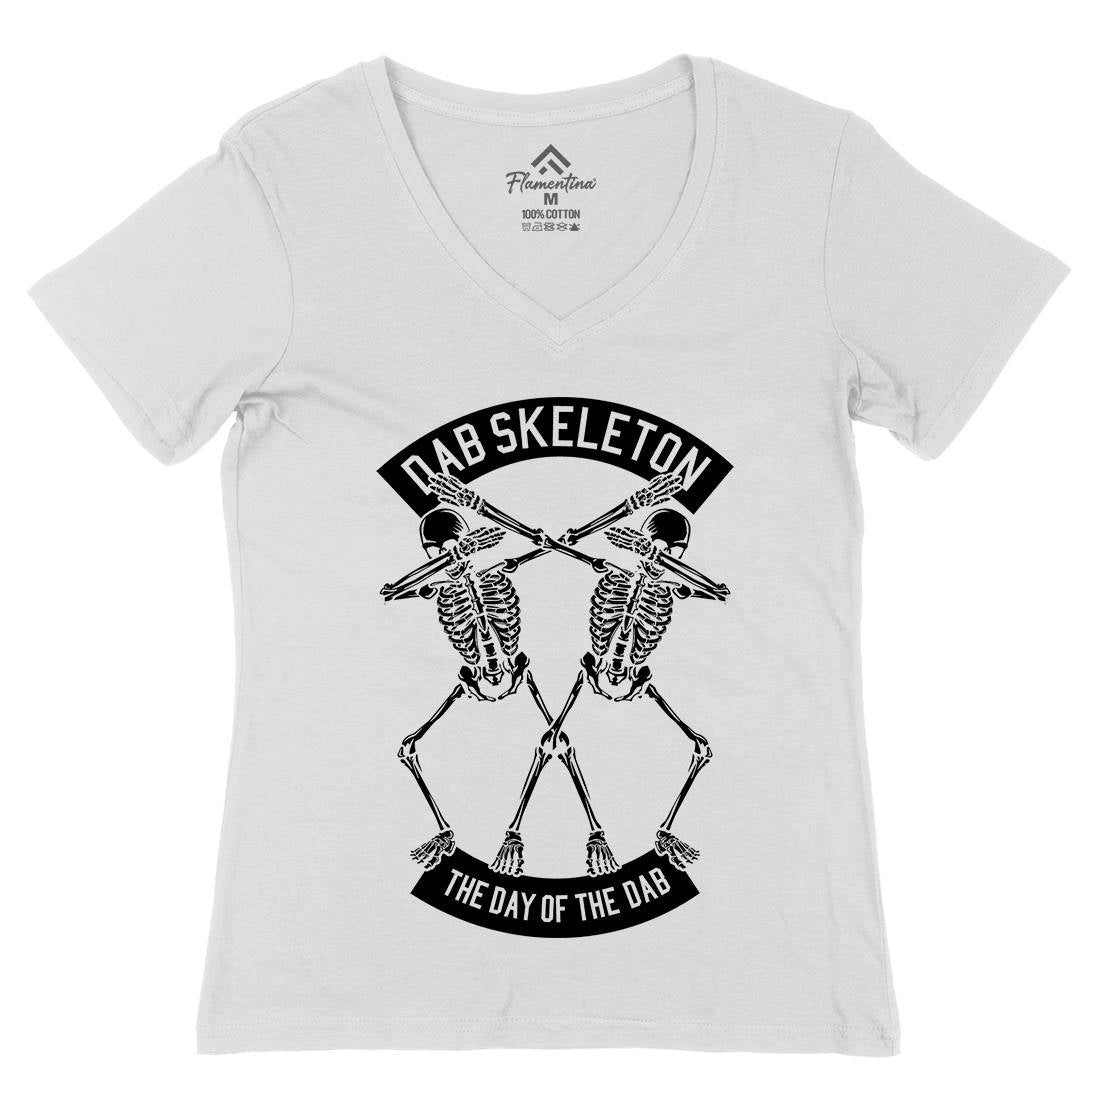 Dab Skeleton Womens Organic V-Neck T-Shirt Music B524